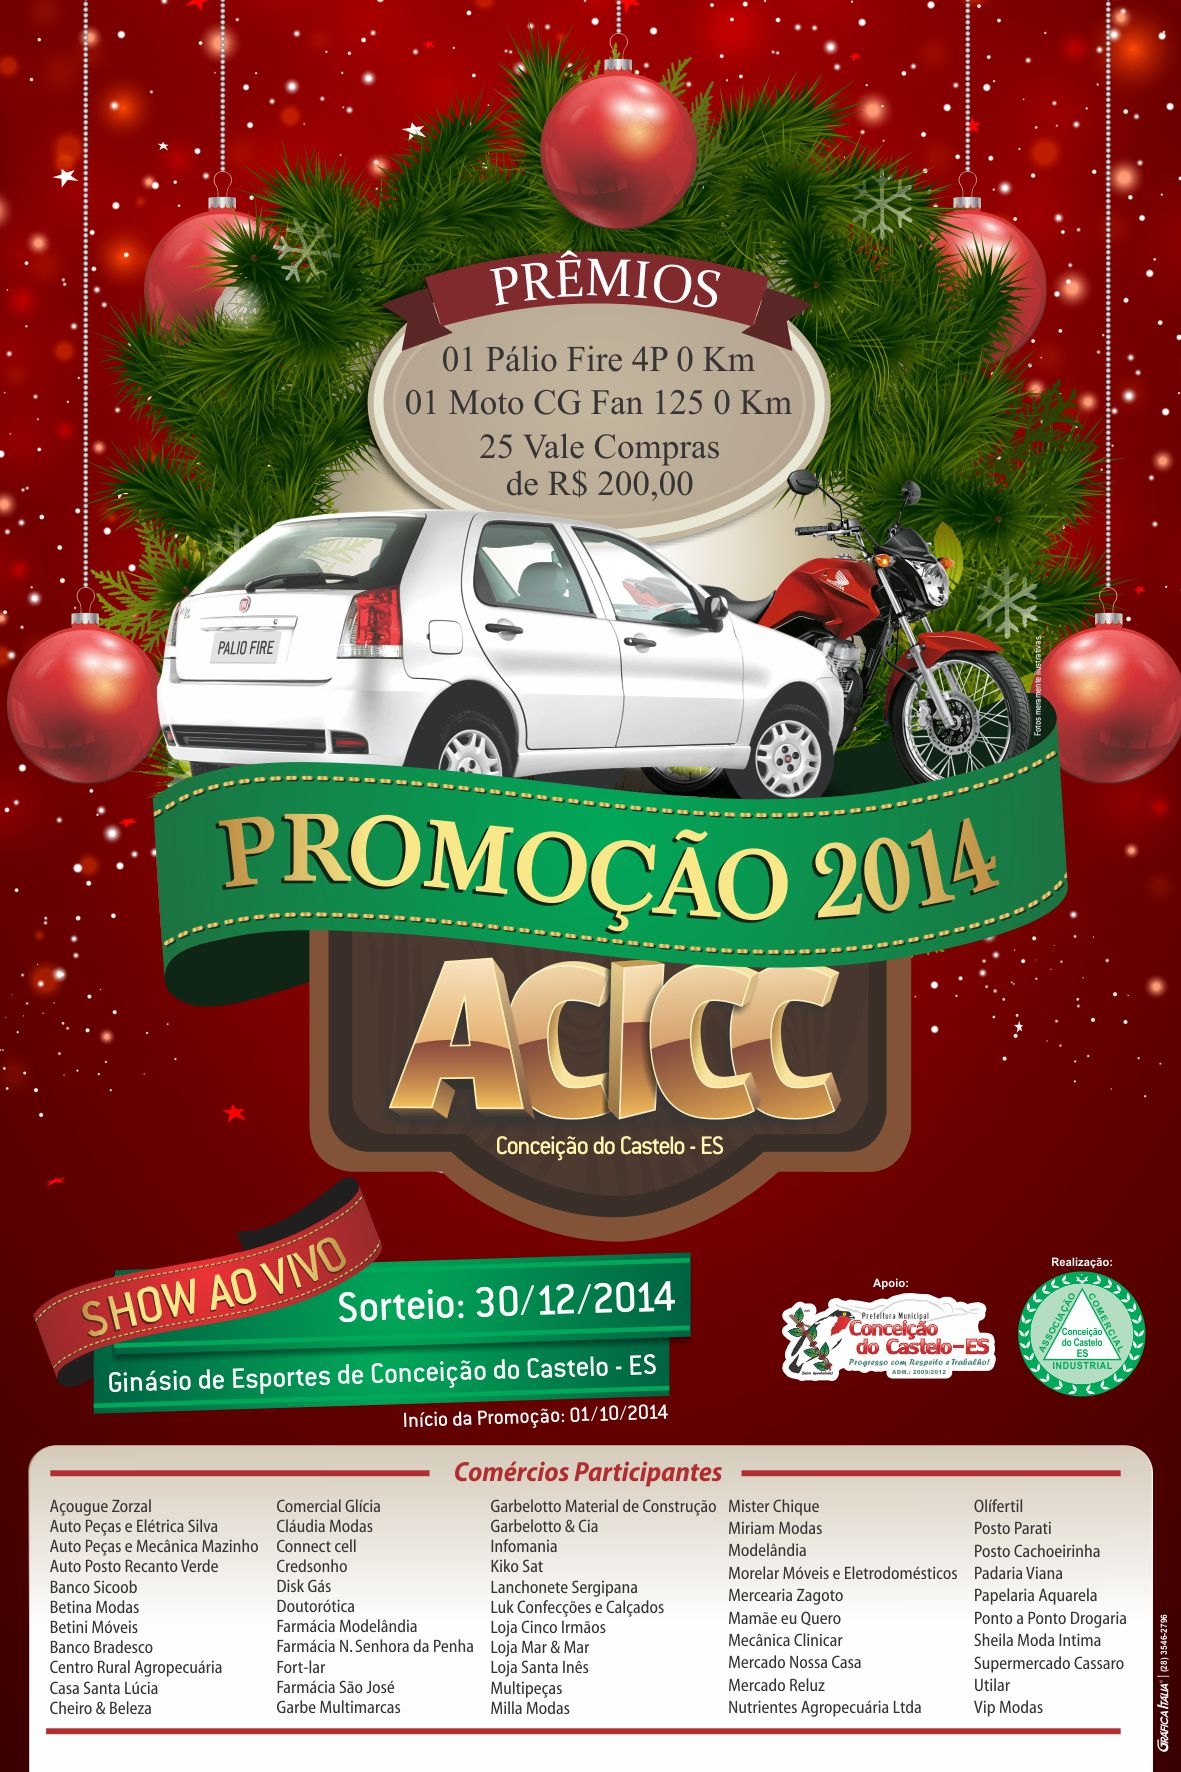 Promoção 2014 de Natal da ACICC já está valendo, aproveite e participe